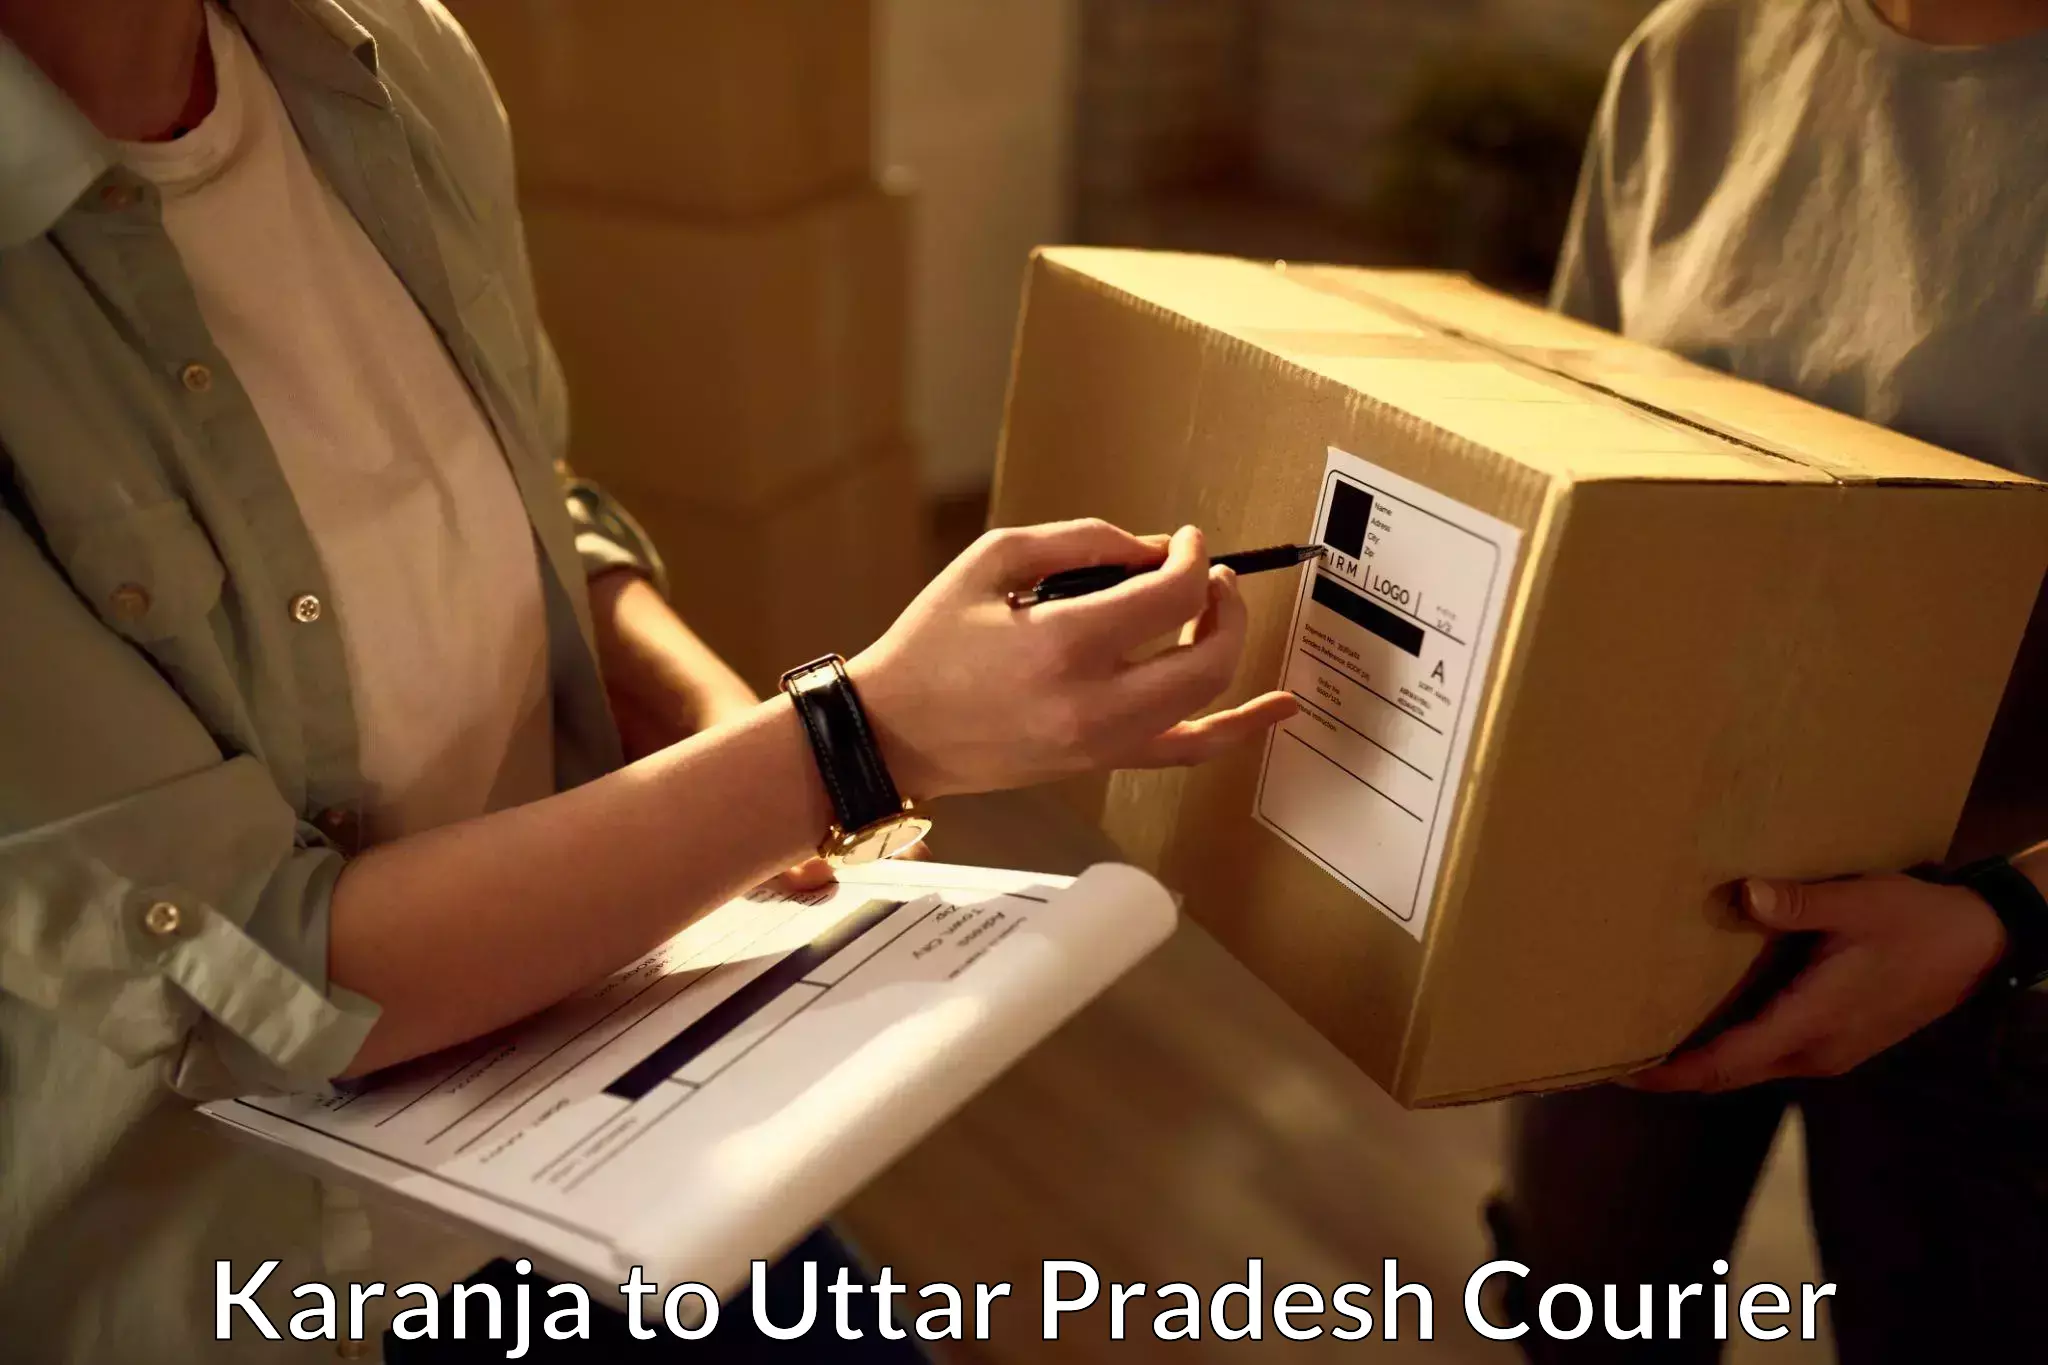 Urban courier service Karanja to Nighasan